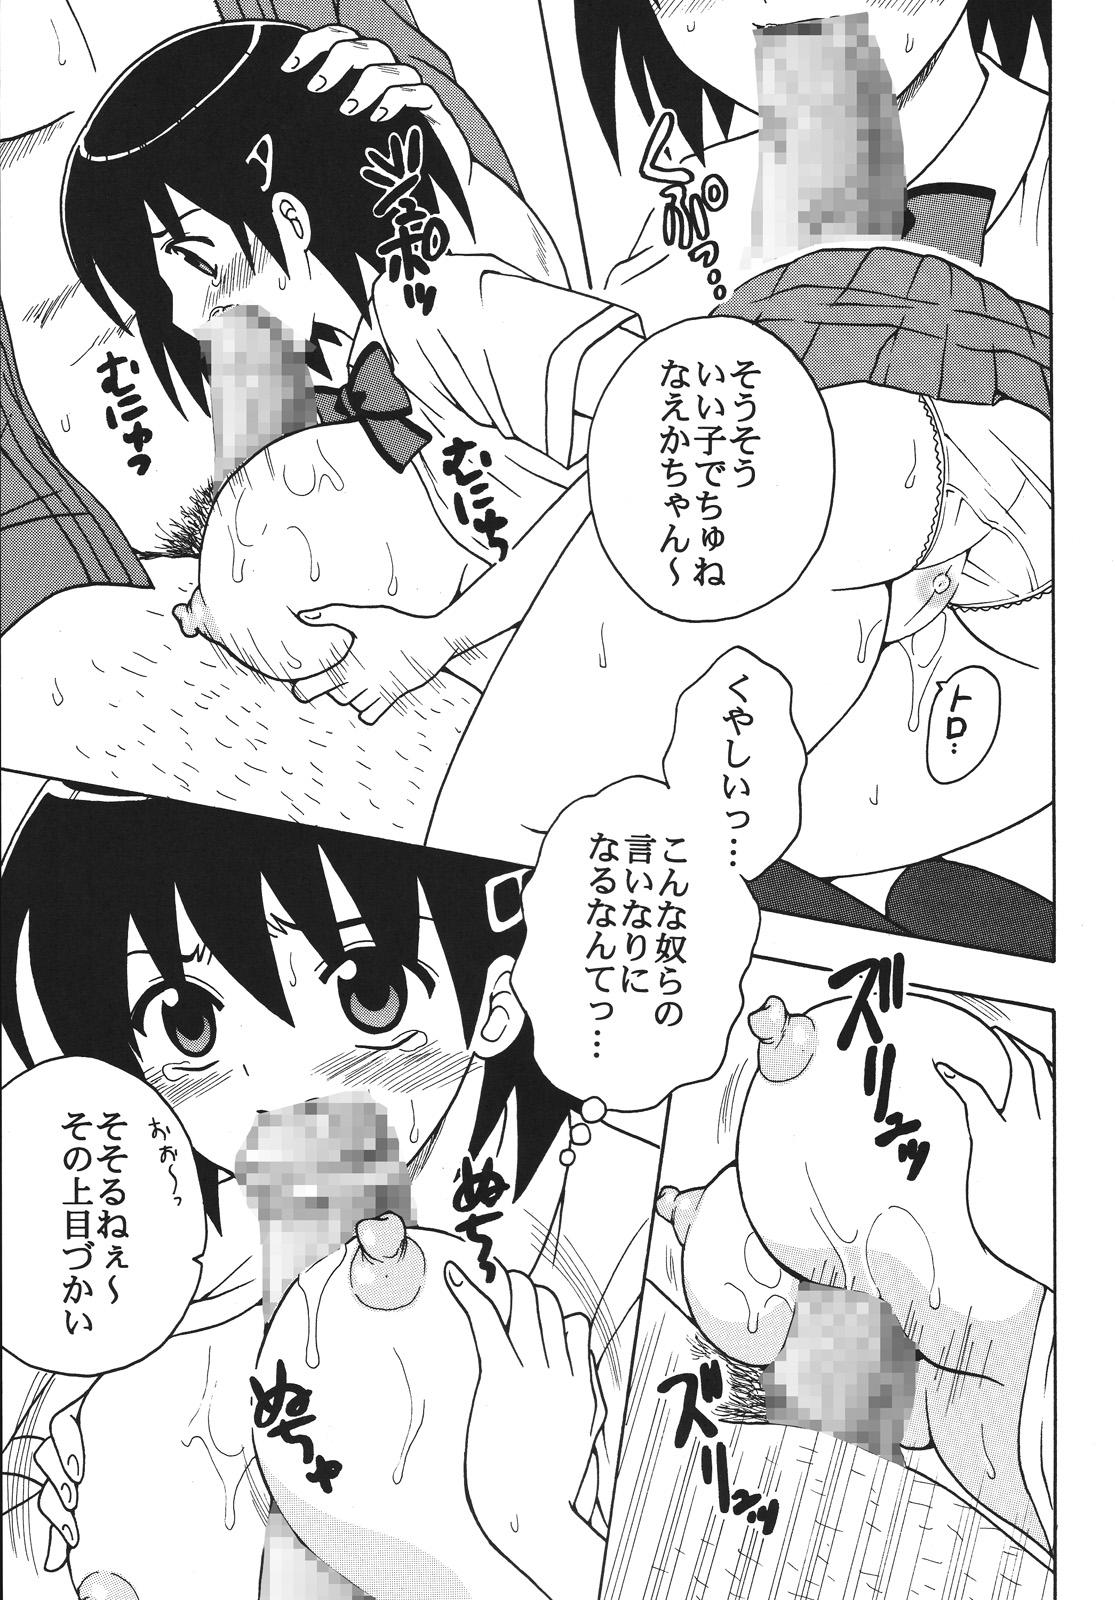 Tranny Sex Nakadashi Maid no Hinkaku 1 - Kamen no maid guy Free Oral Sex - Page 8